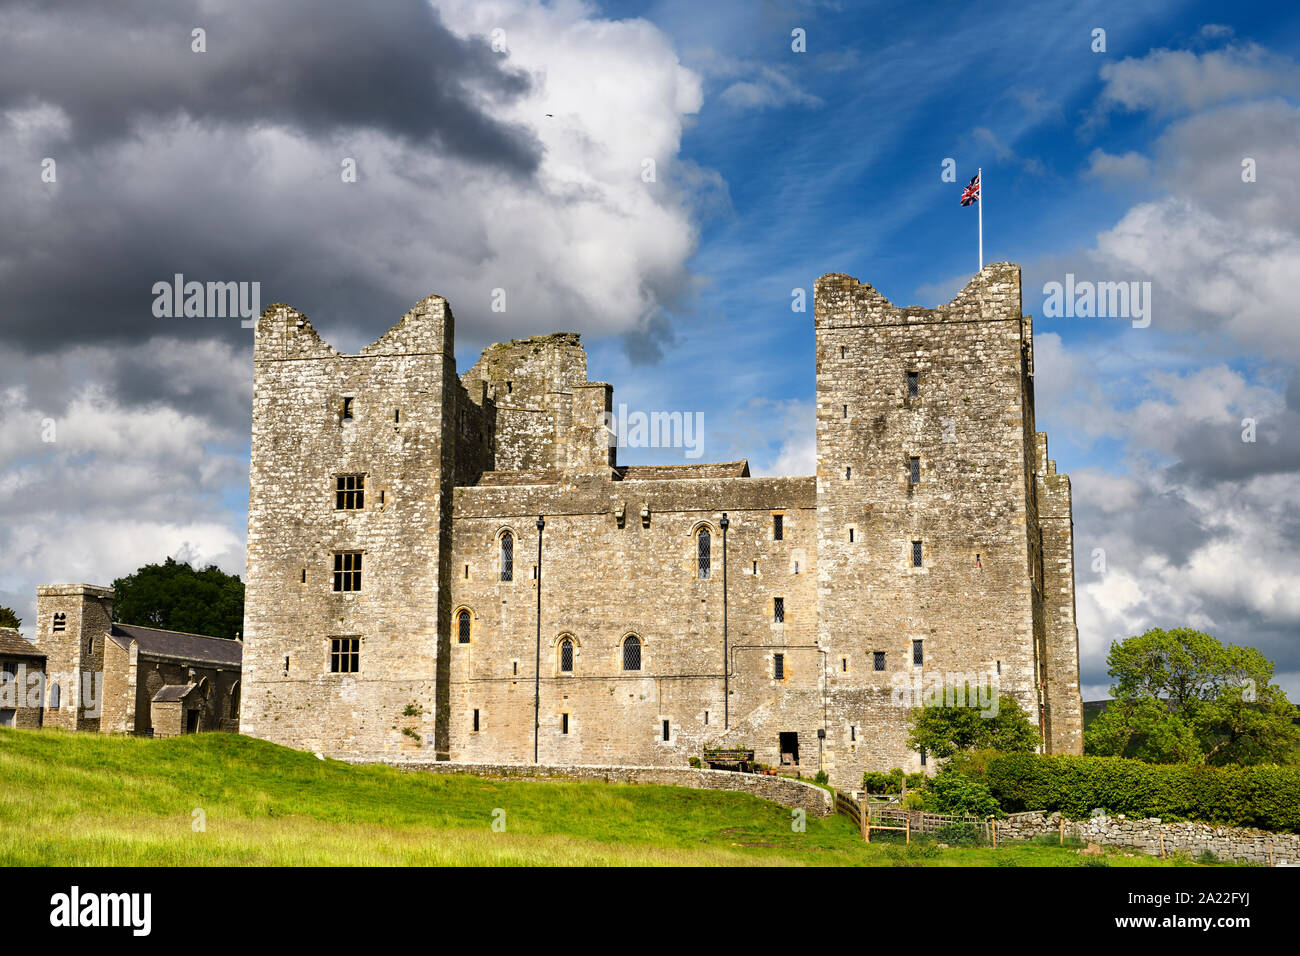 Côté ouest de la 14e siècle château de Bolton dans sun avec drapeau britannique Wensleydale Yorkshire Angleterre Banque D'Images